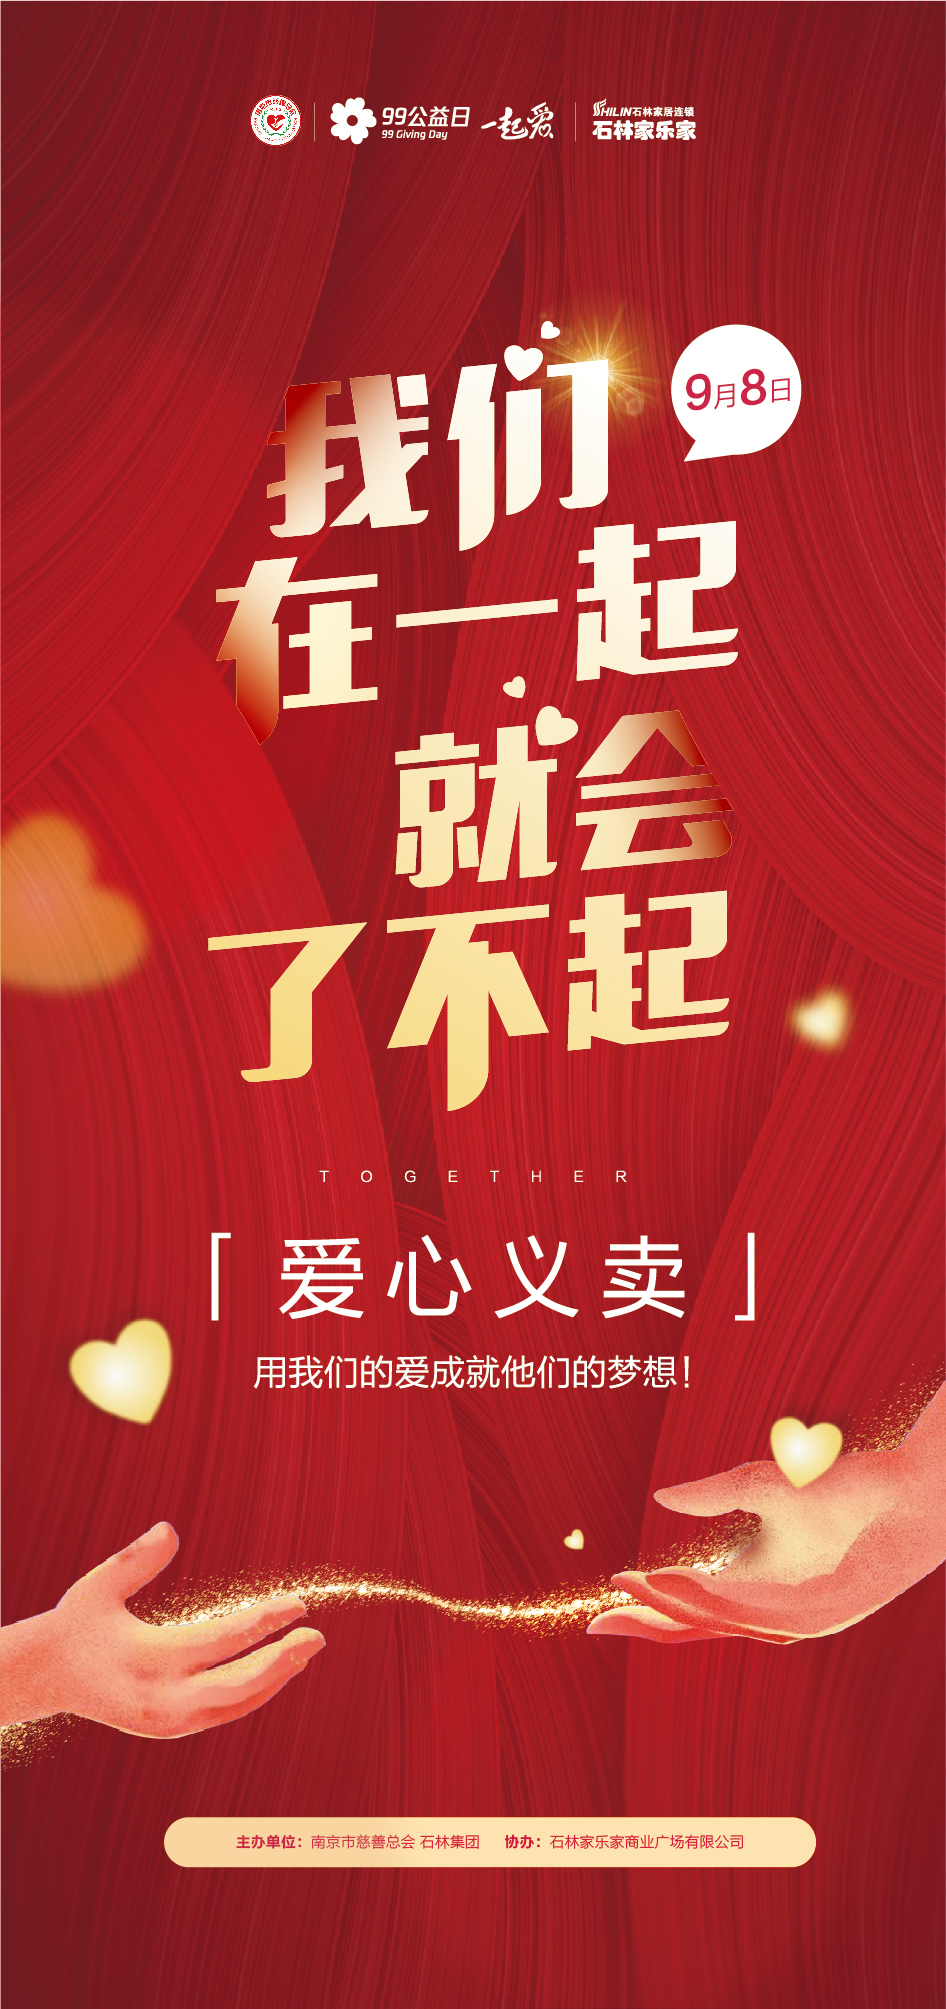 【源文件下载】 海报 公益活动 义卖 爱心 红金 双手